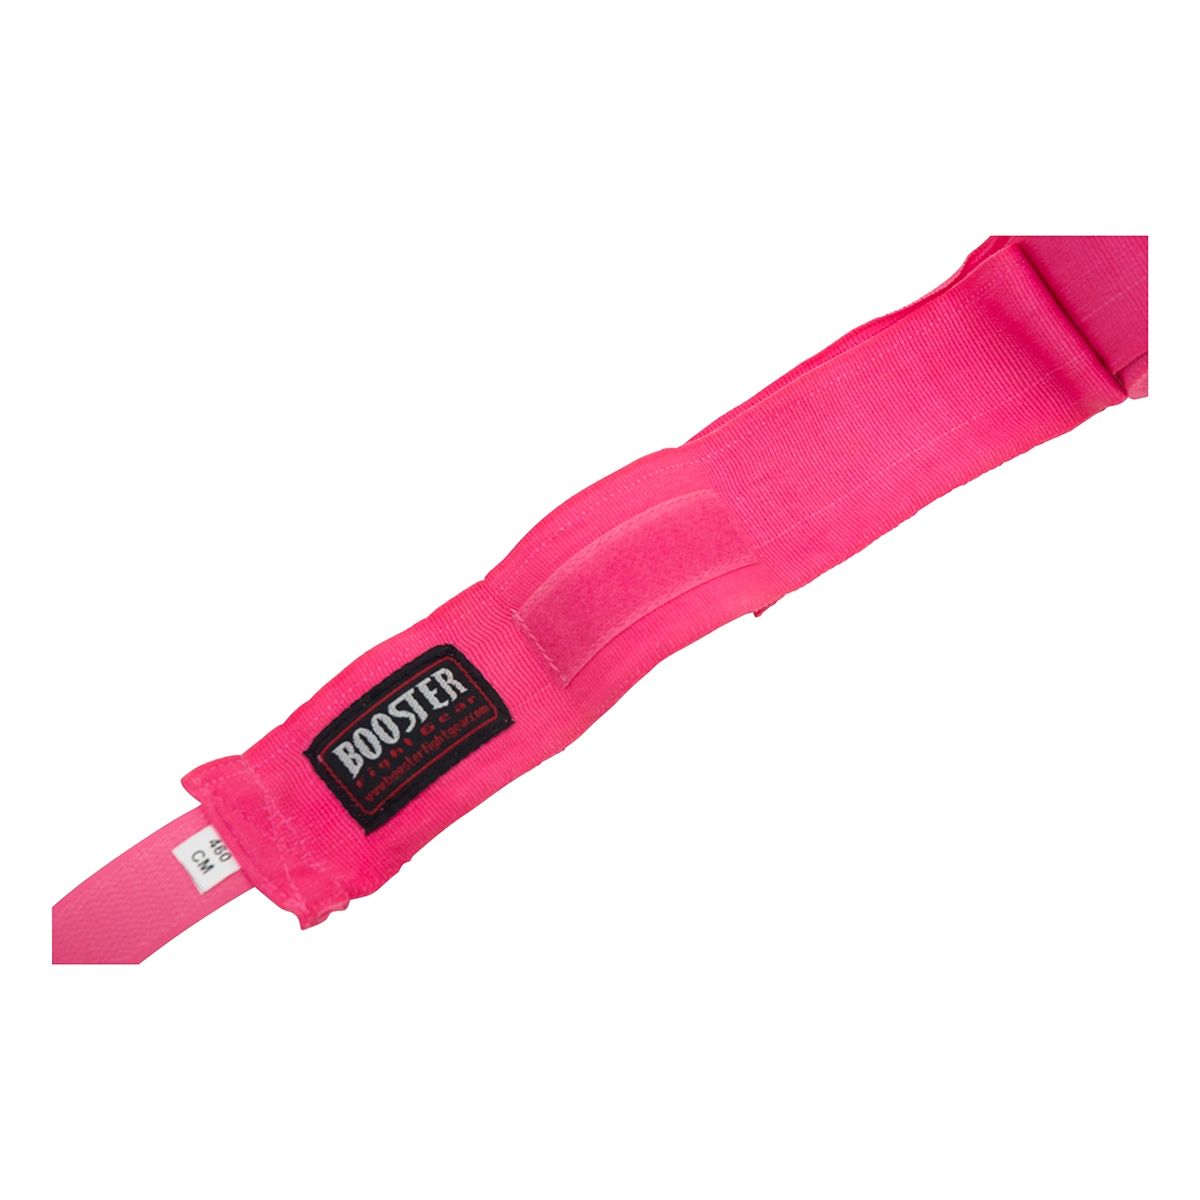  Booster Fight Gear BPC Roze Bandages - Stijl & Bescherming